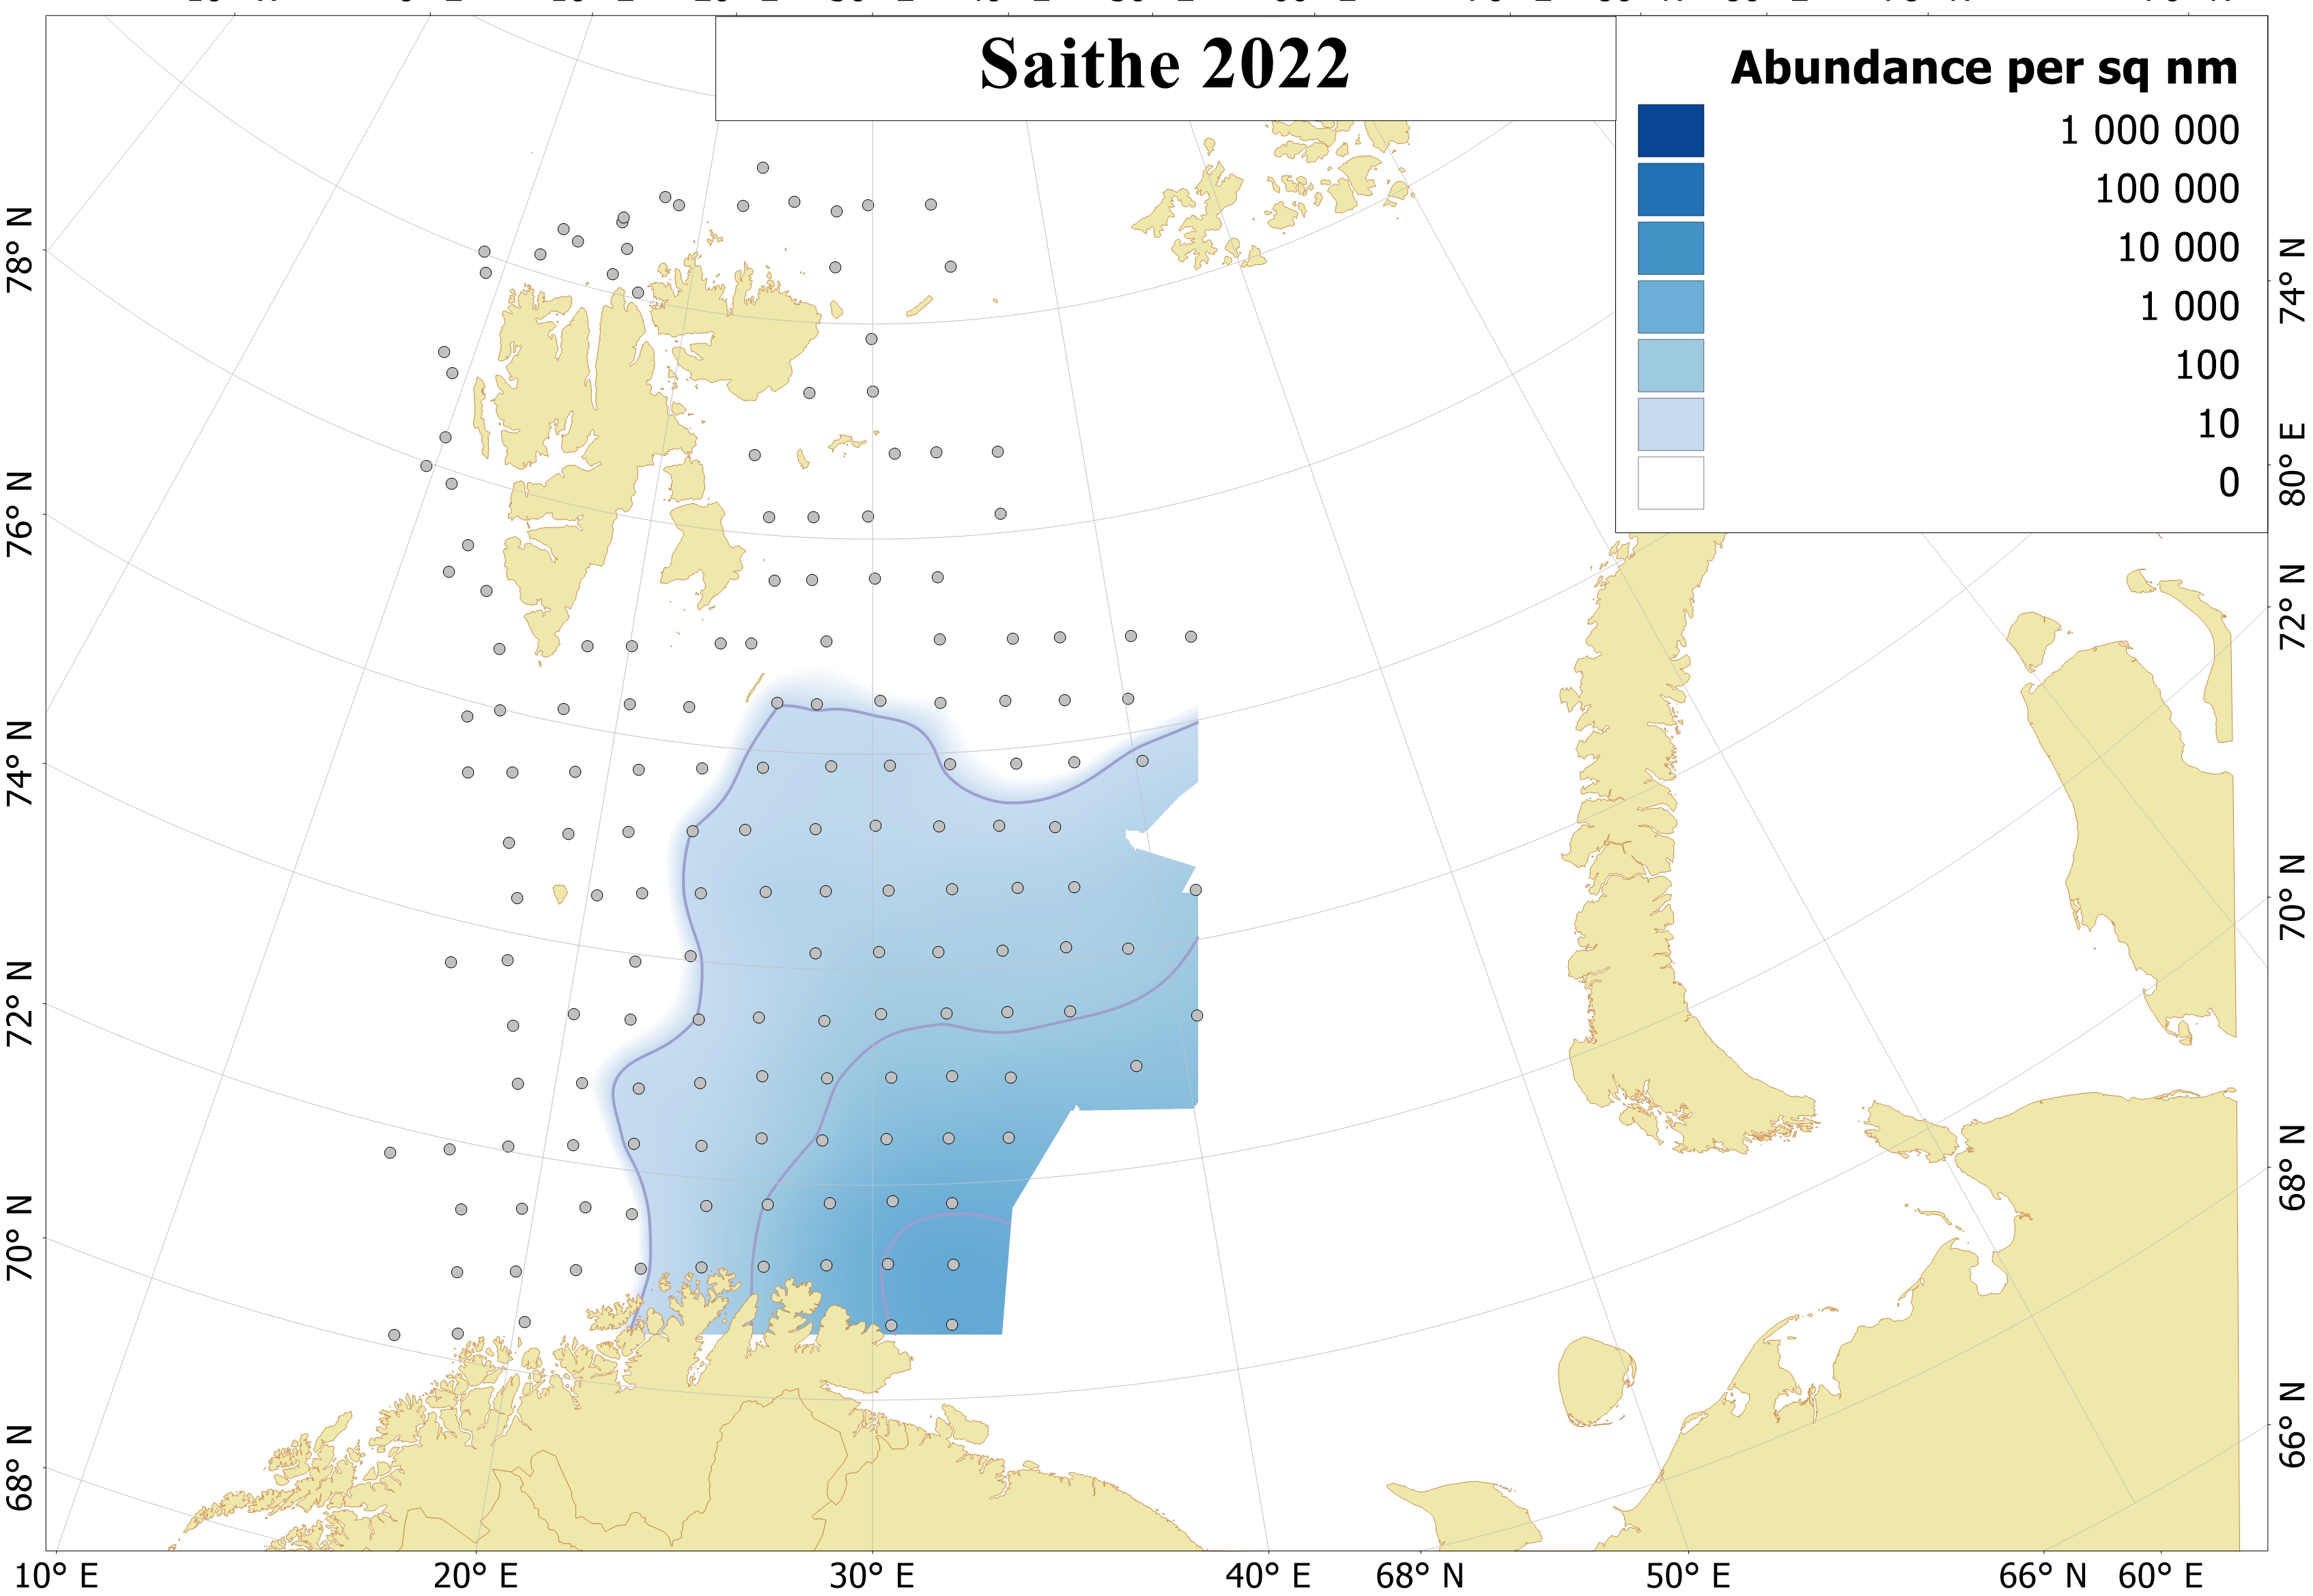 Ch 6 Distribution of 0-group saithe 2022